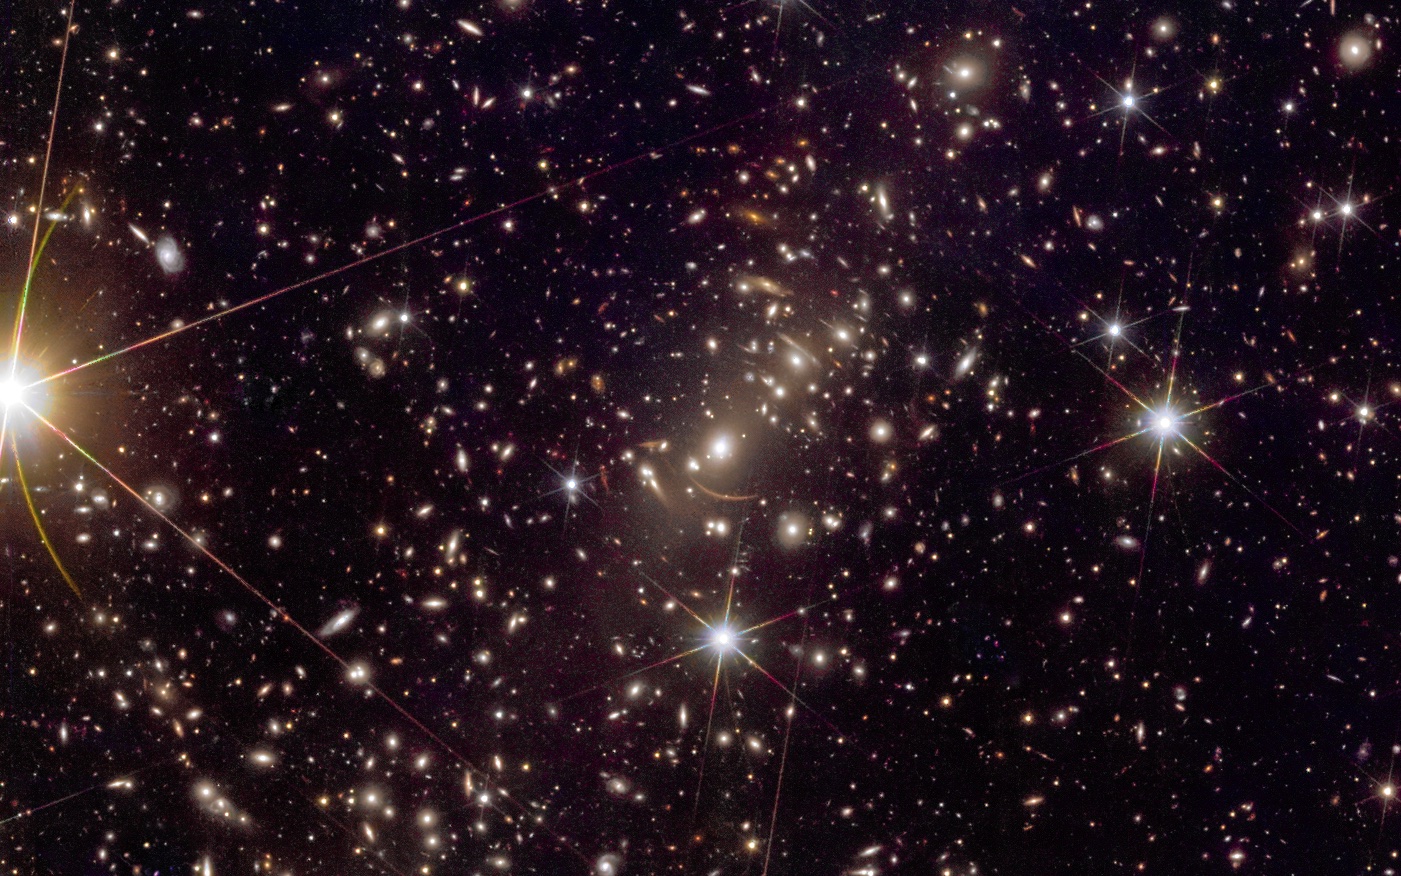 Kolosszális galaxishalmazok tárulnak fel a Euclid űrtávcső káprázatos új felvételein